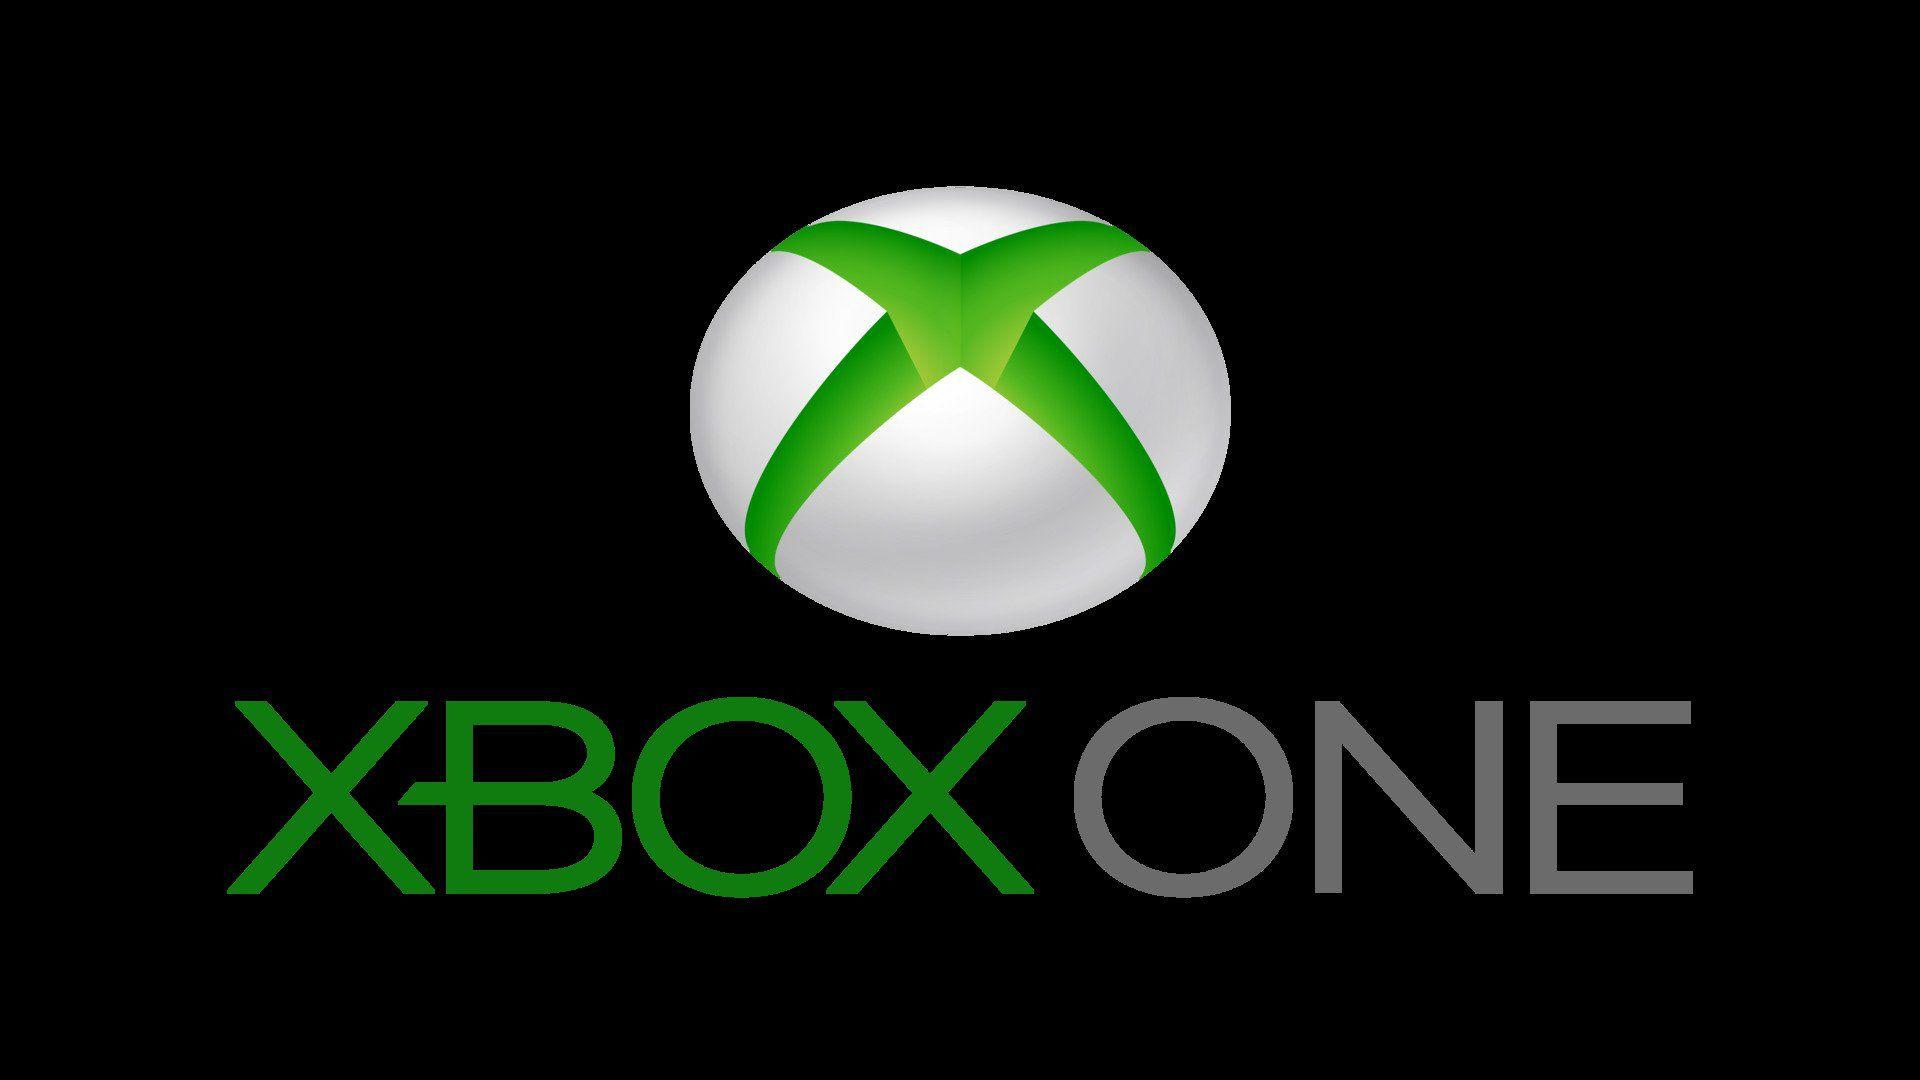 Xbone Logo - Xbox One's 5th Anniversary Bumpy Journey, A Bright Future